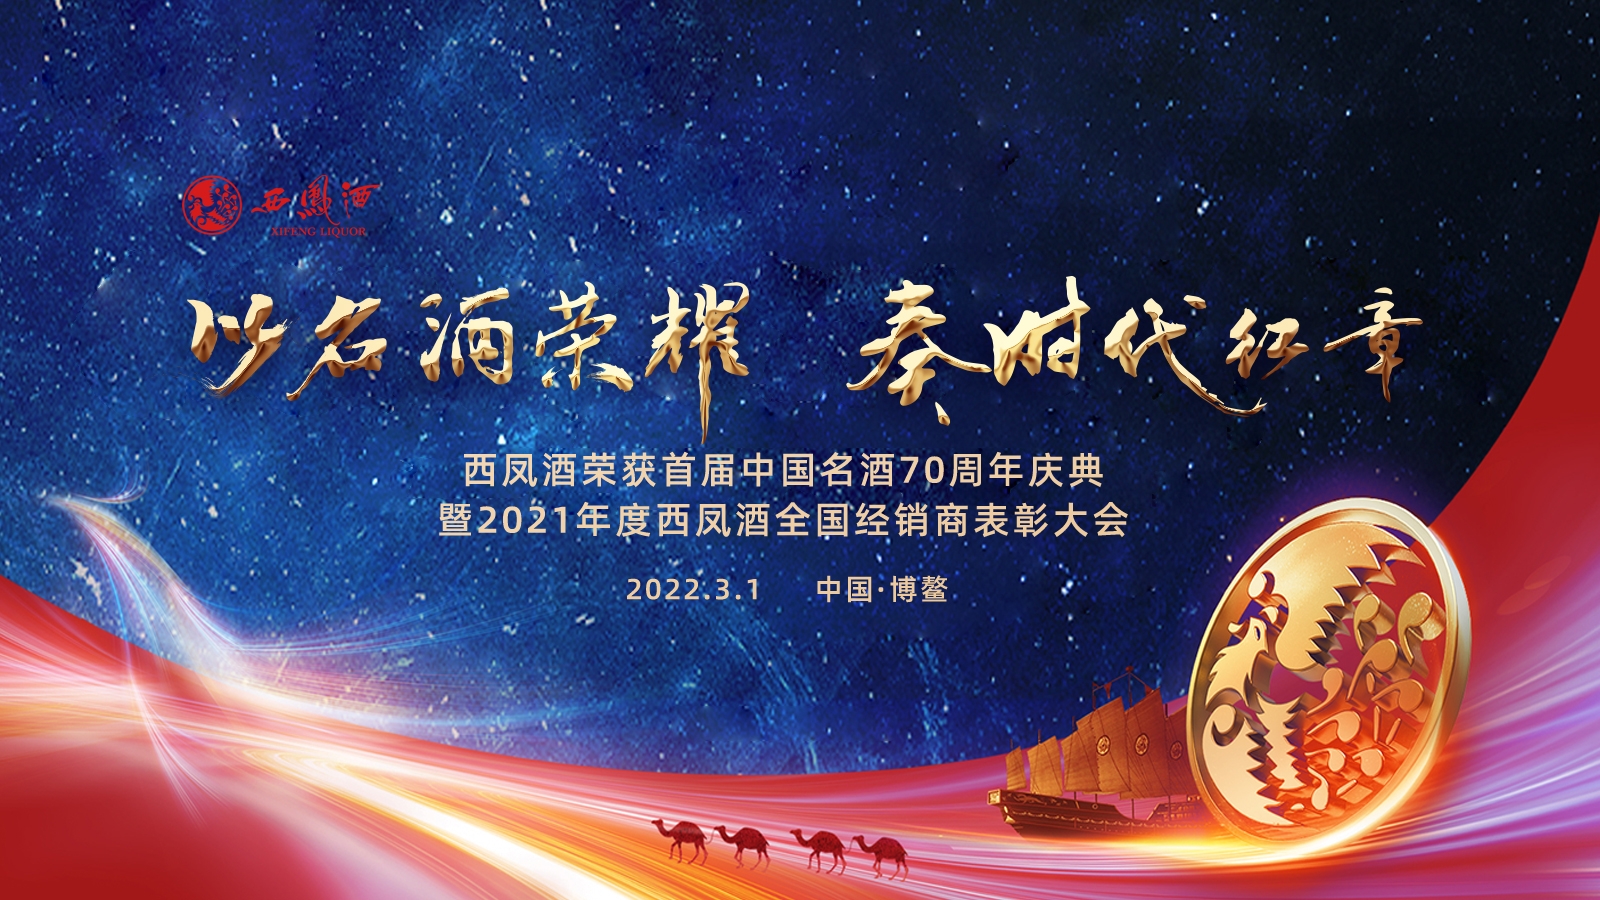 西凤酒荣获首届中国名酒70周年庆典暨2021年度全国经销商表彰大会